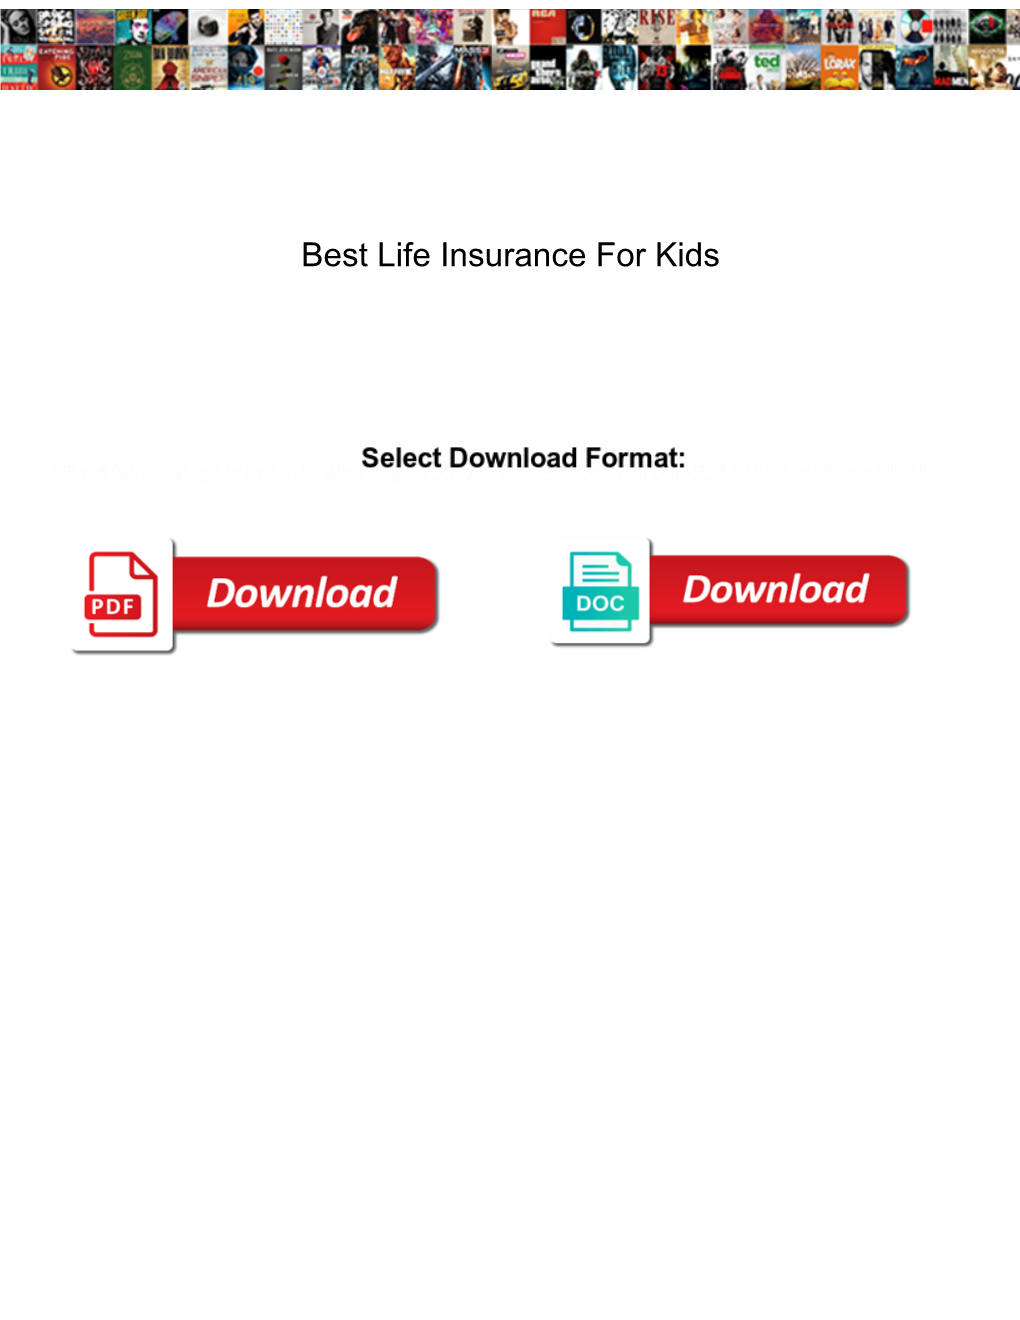 Best Life Insurance for Kids